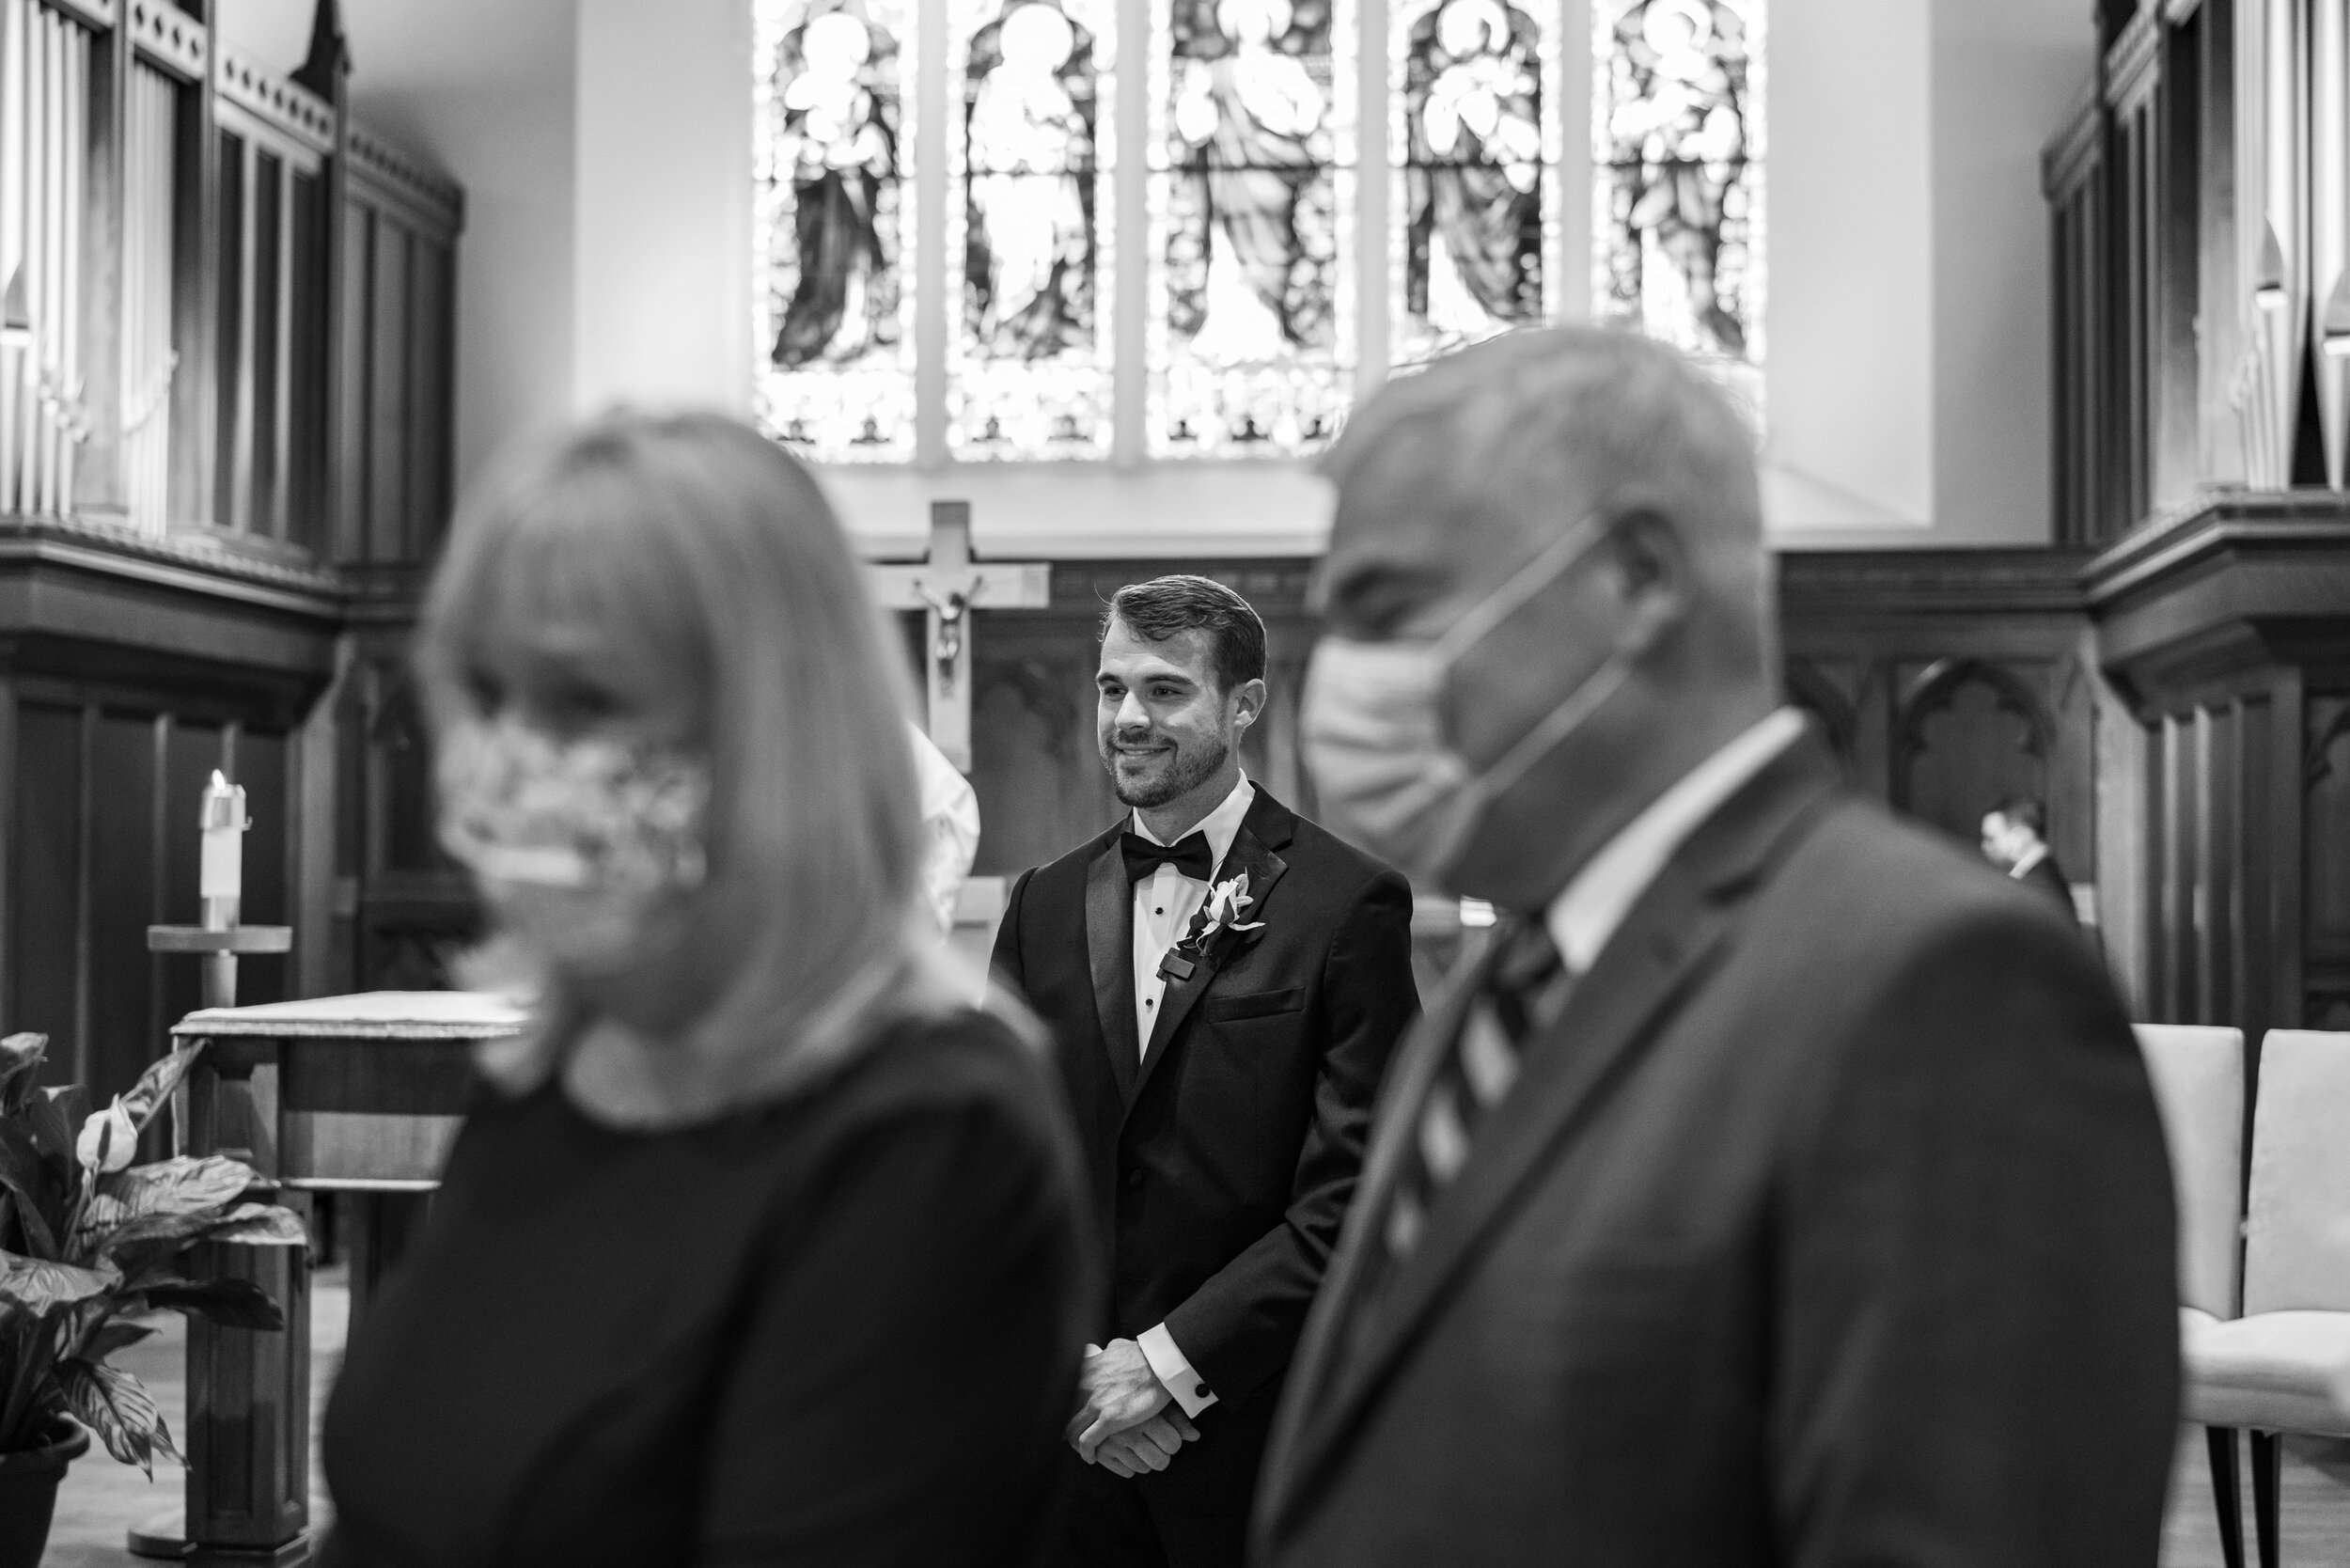 Groom watching bride walk down aisle at Dahlgren Chapel wedding ceremony in Georgetown